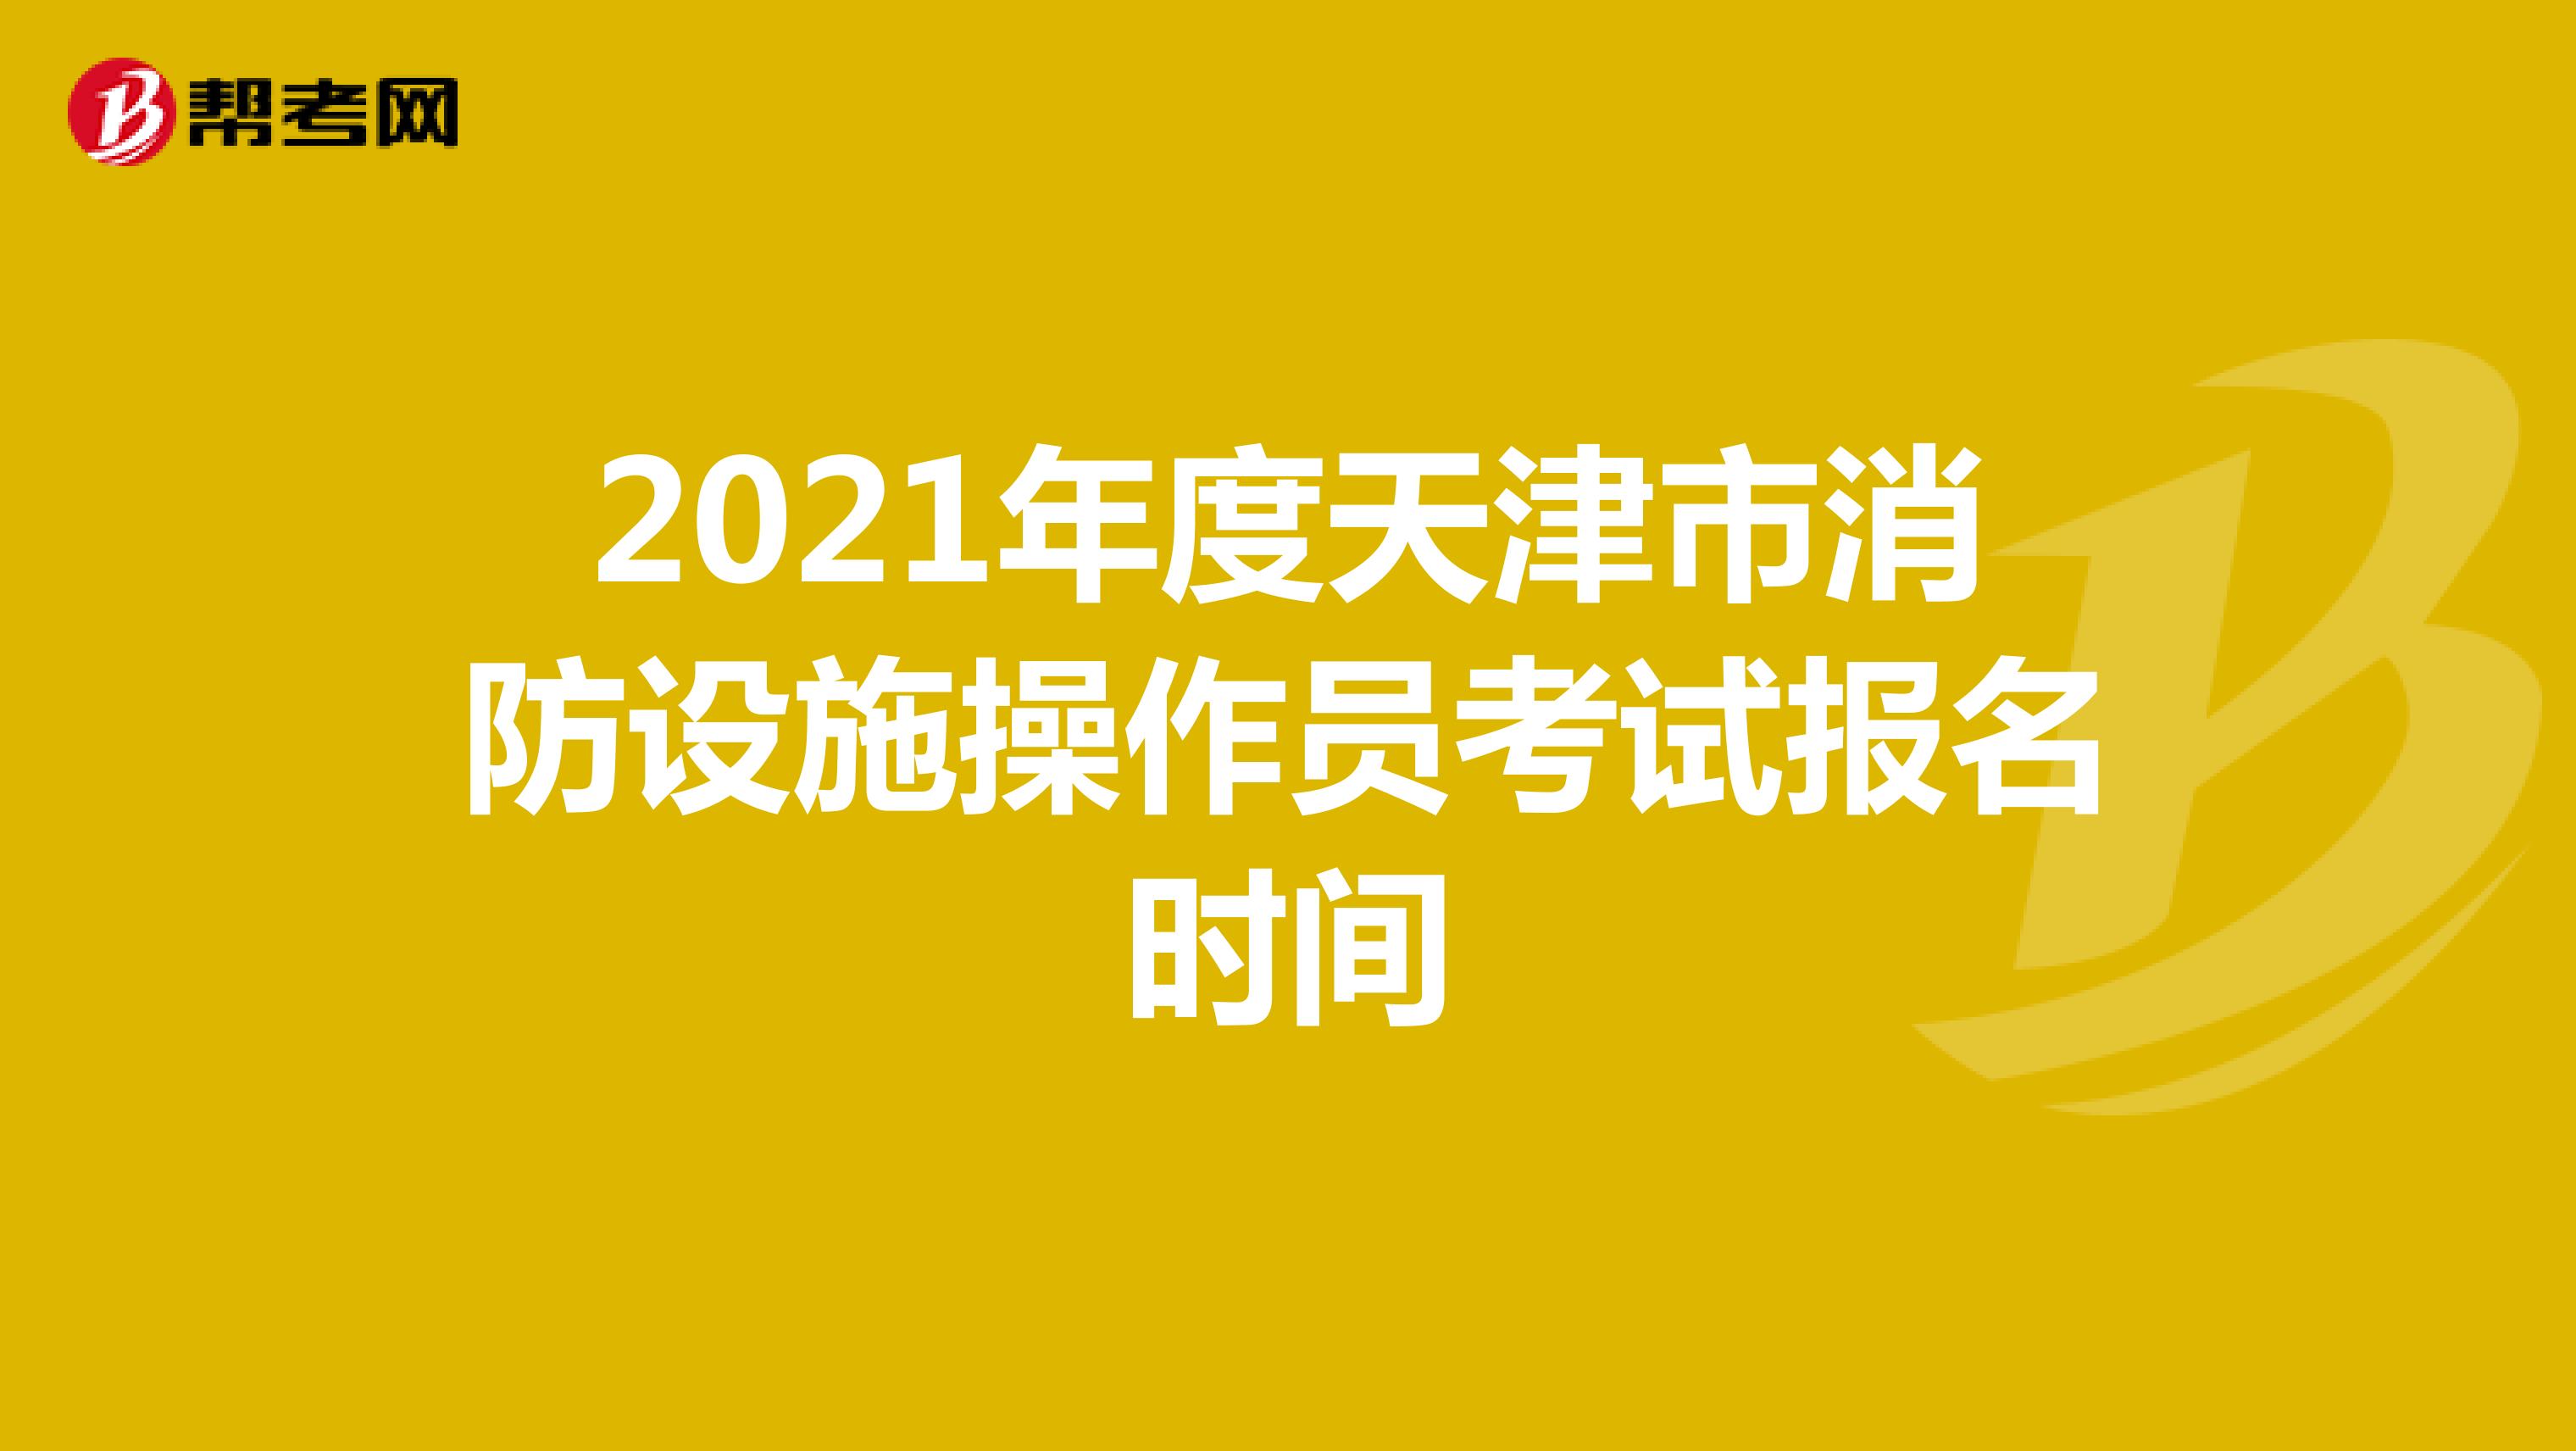 2021年度天津市消防设施操作员考试报名时间